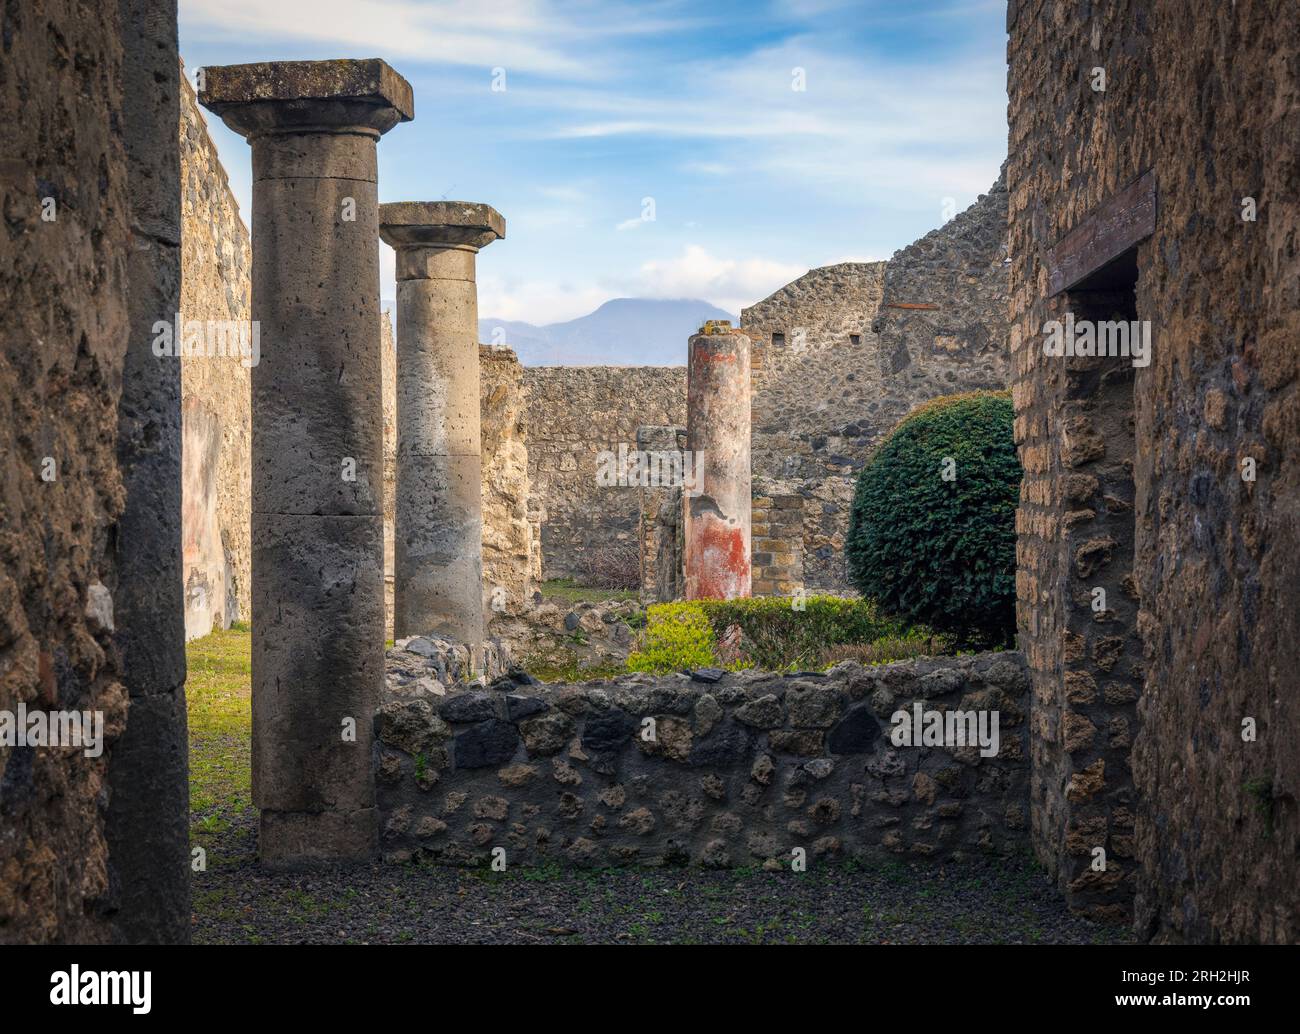 Ausgrabungsstätte Pompeji, Kampanien, Italien. Eine Ausgrabung in der Via dell'abbondanza, einer der wichtigsten Straßen der Stadt. Pompeji, Herculaneum und Stockfoto